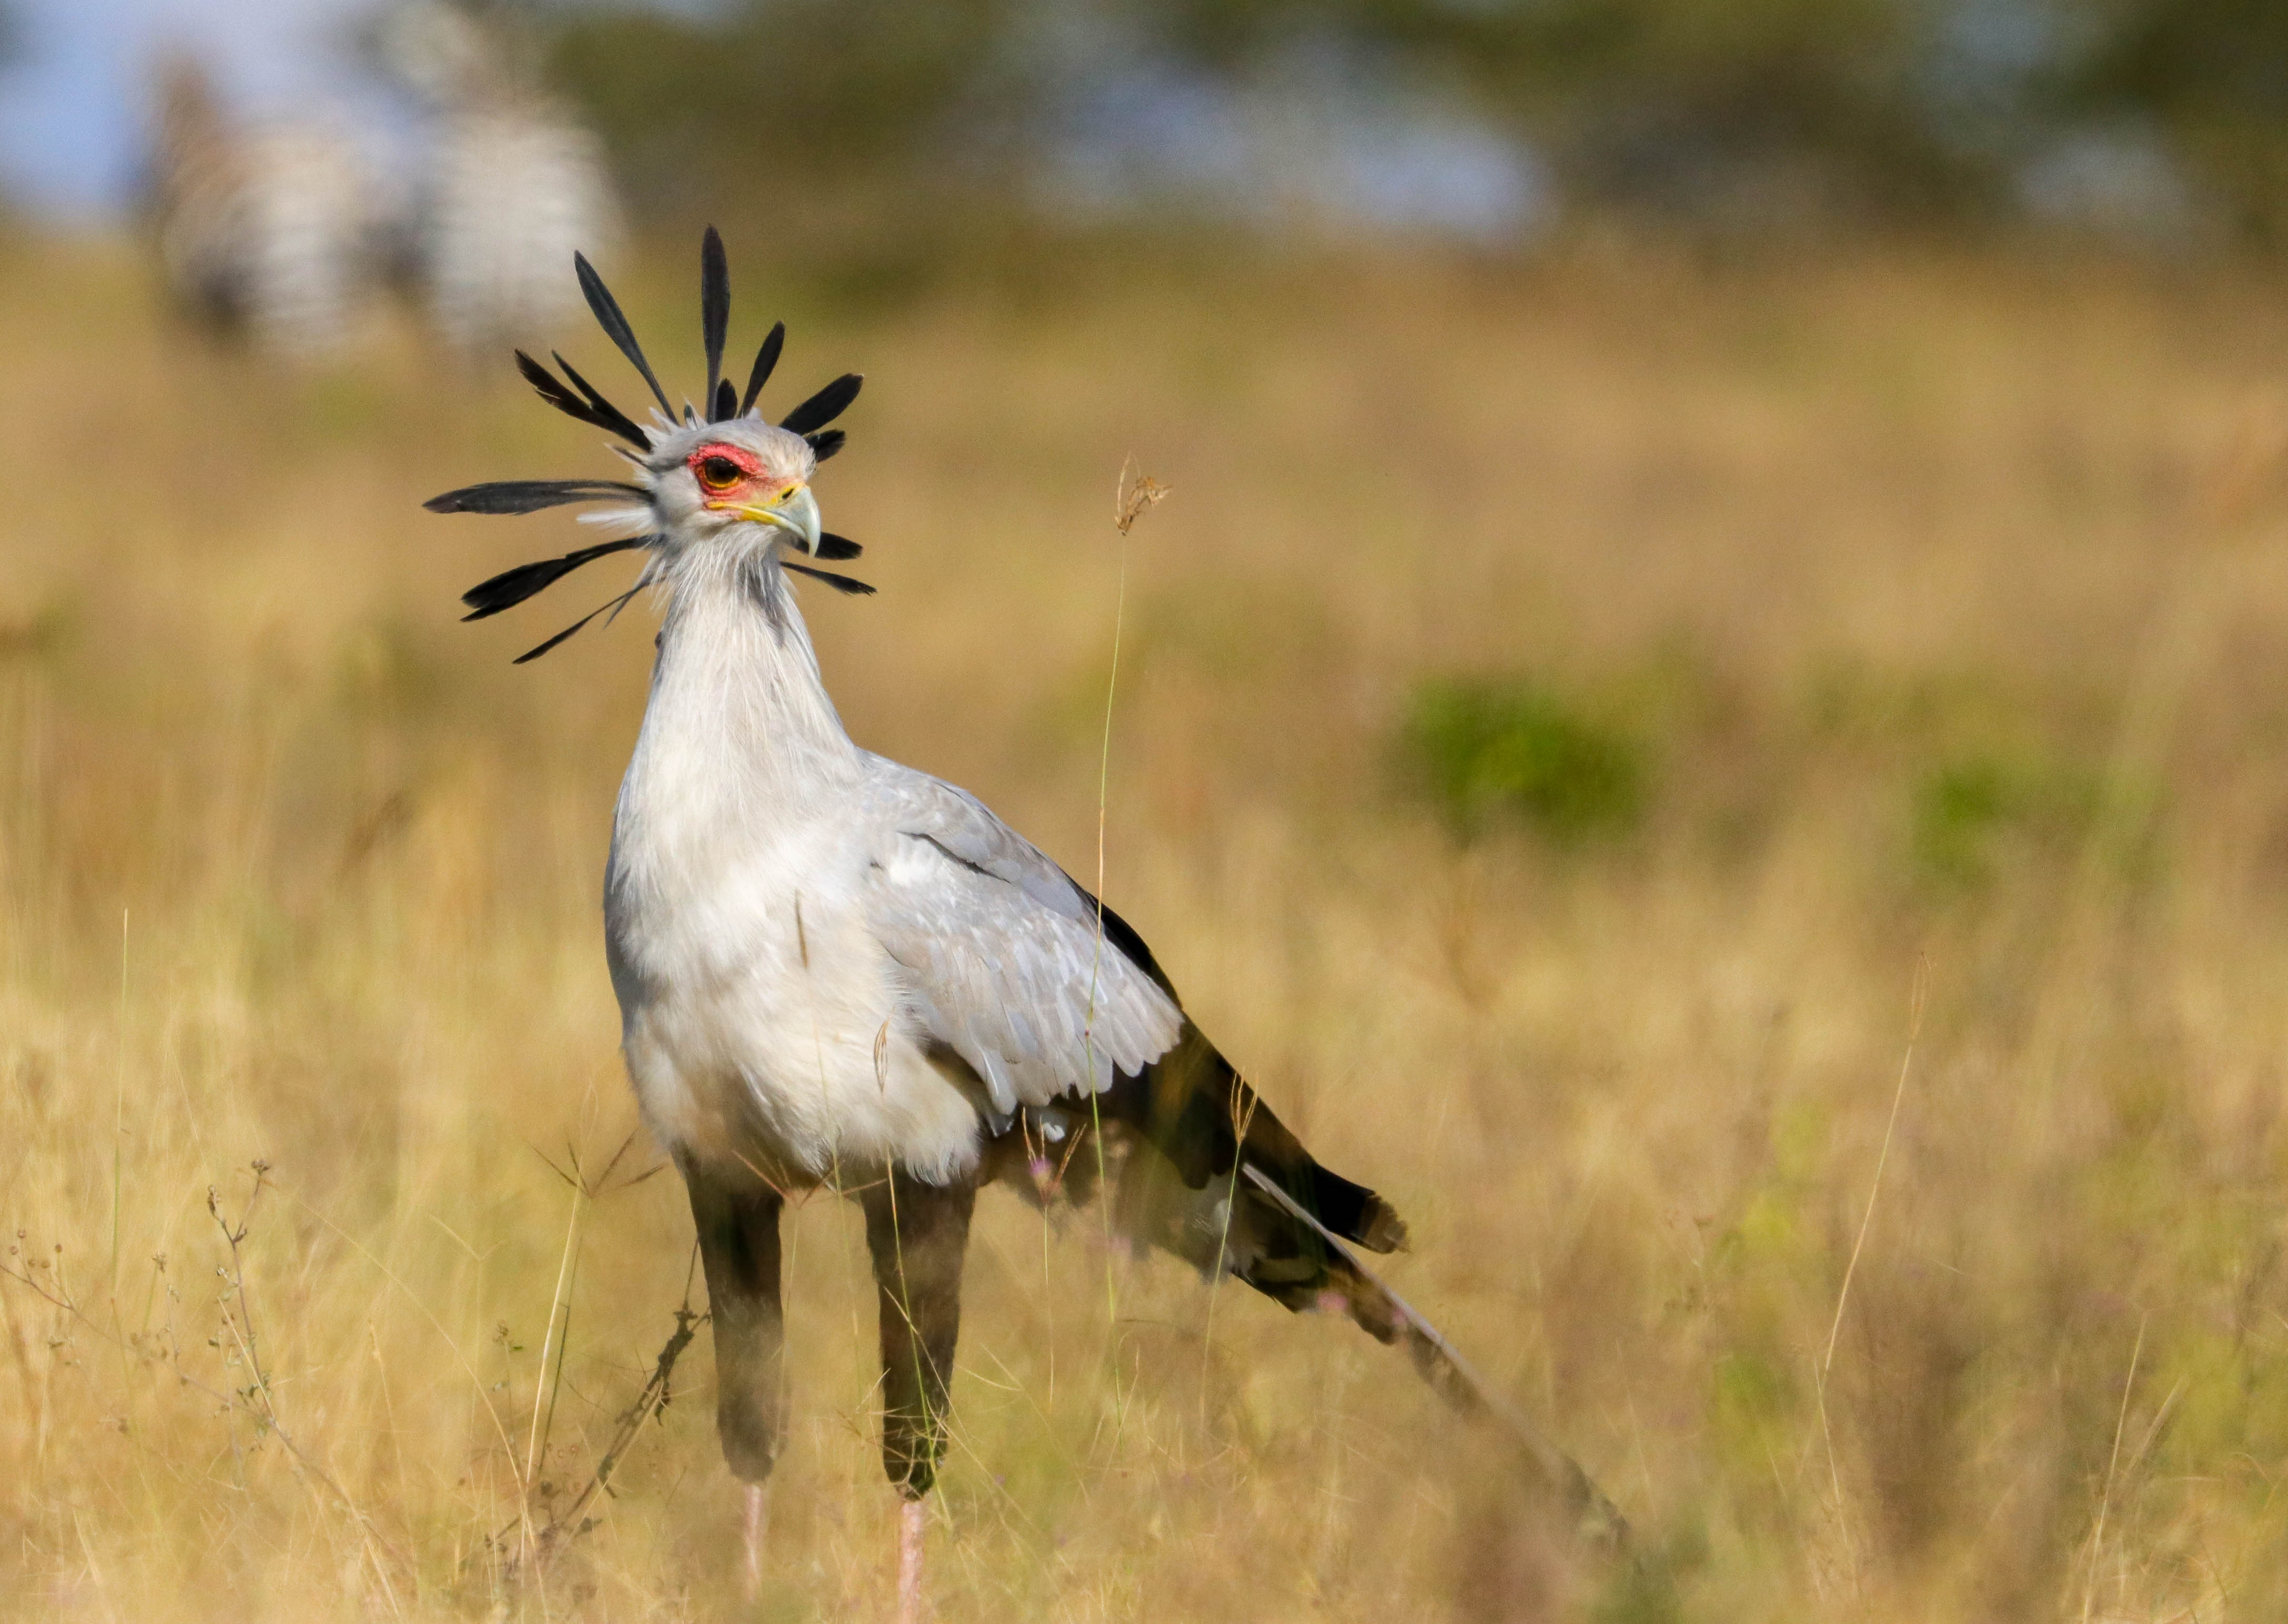 A Secretarybird stands in a grassy field in Kenya